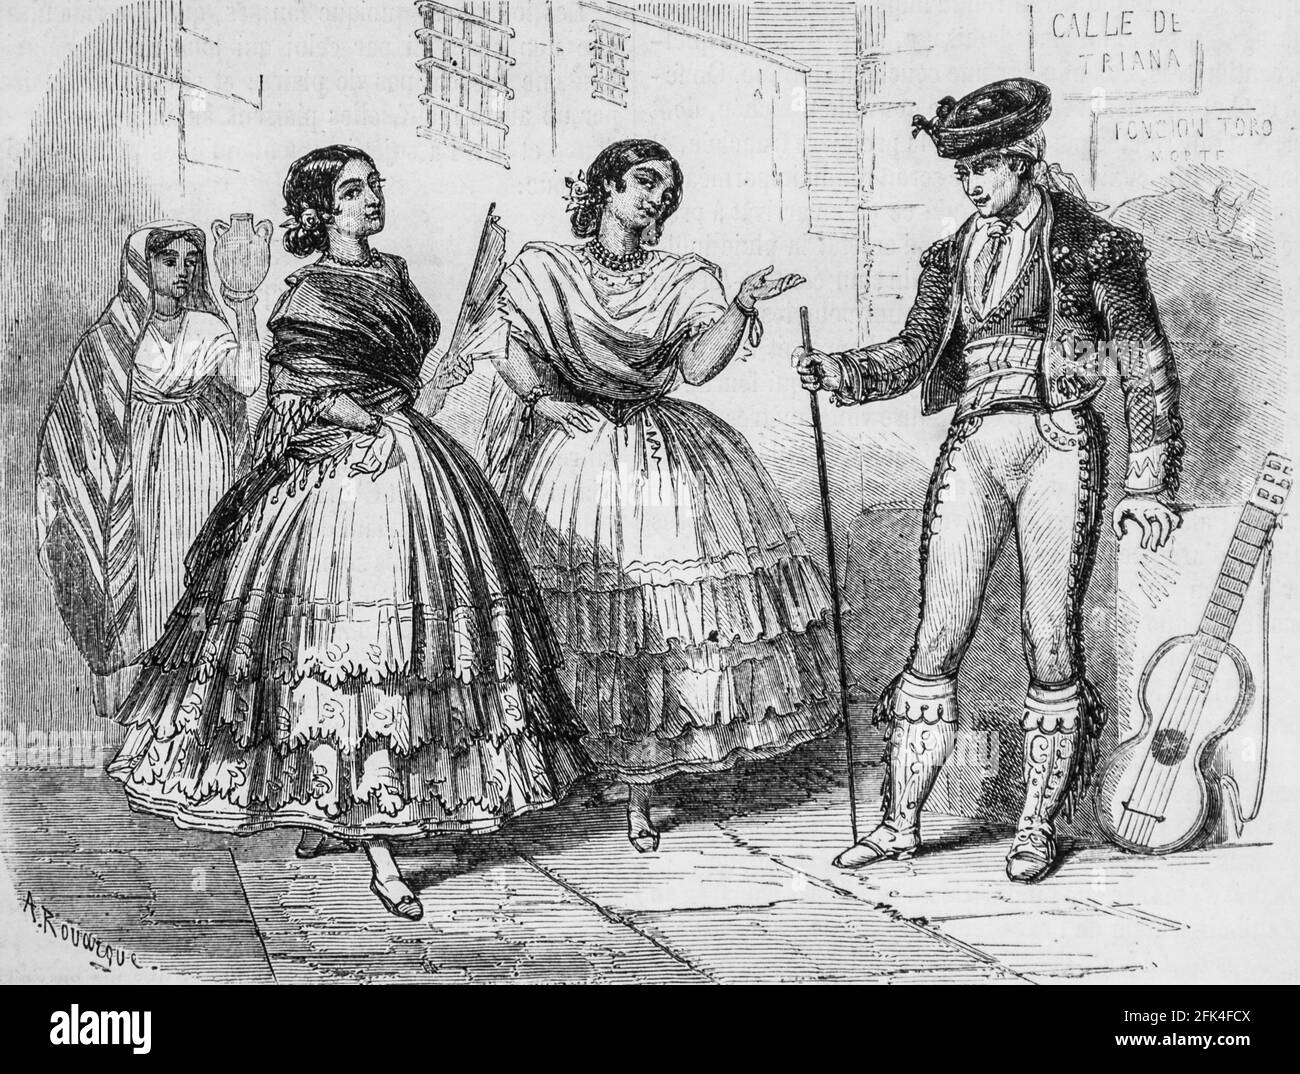 gitanes de triana faubourg de seville ,le magazin pittoresque,editeur edouard charton, 1860 Stock Photo